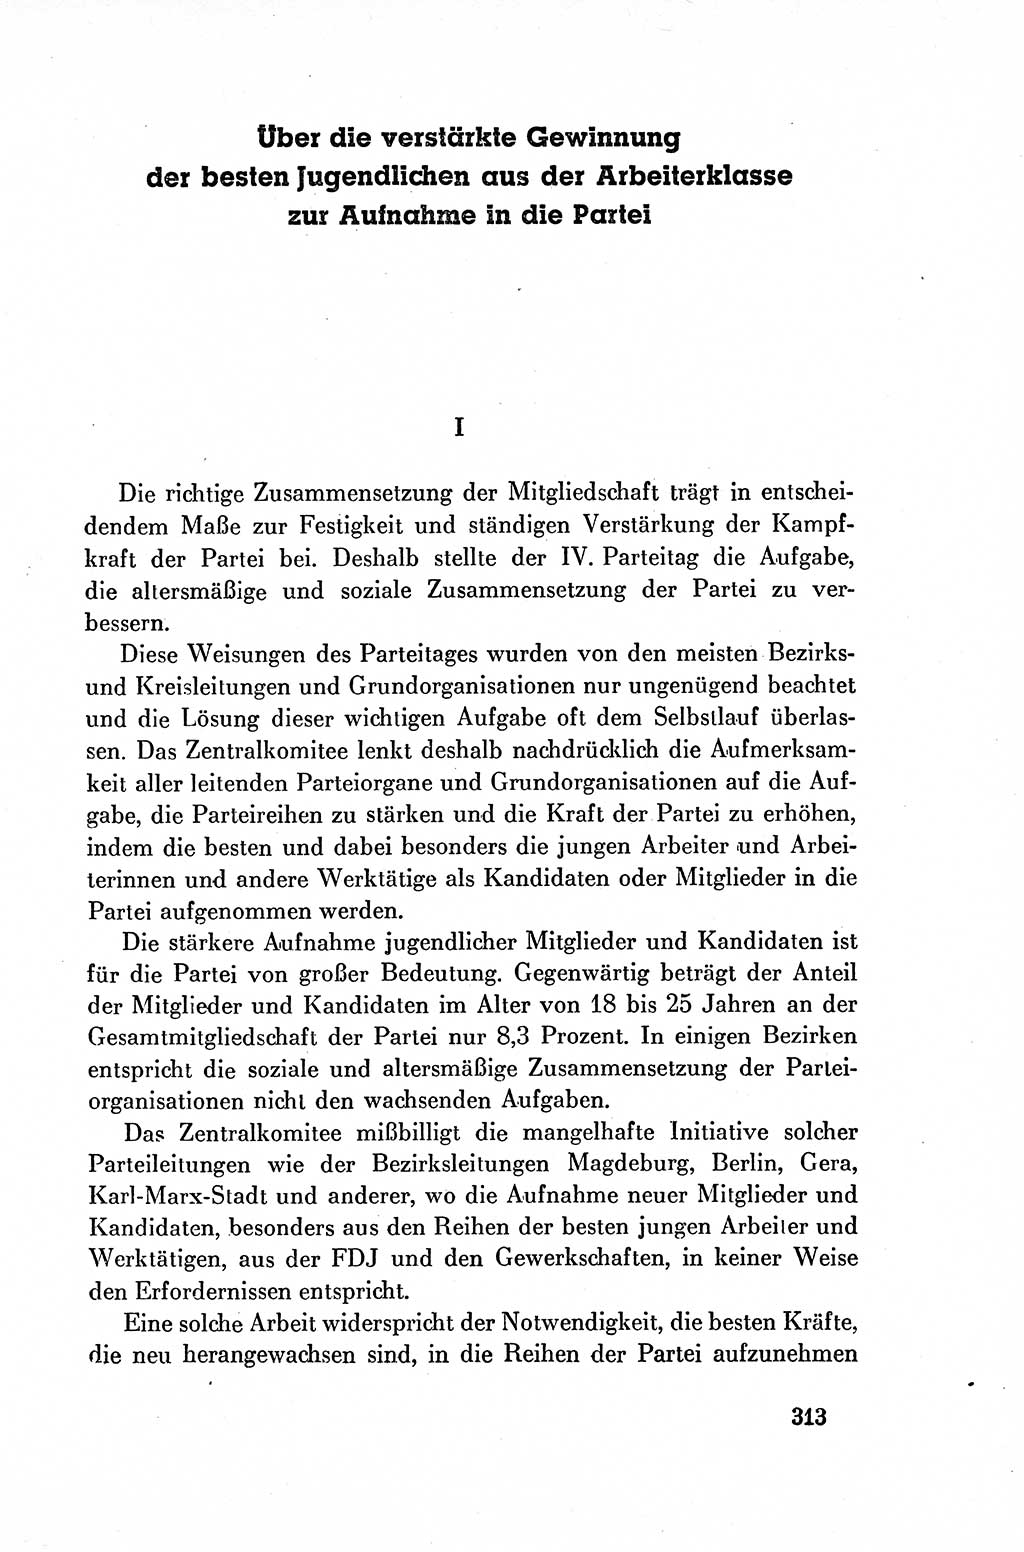 Dokumente der Sozialistischen Einheitspartei Deutschlands (SED) [Deutsche Demokratische Republik (DDR)] 1954-1955, Seite 313 (Dok. SED DDR 1954-1955, S. 313)